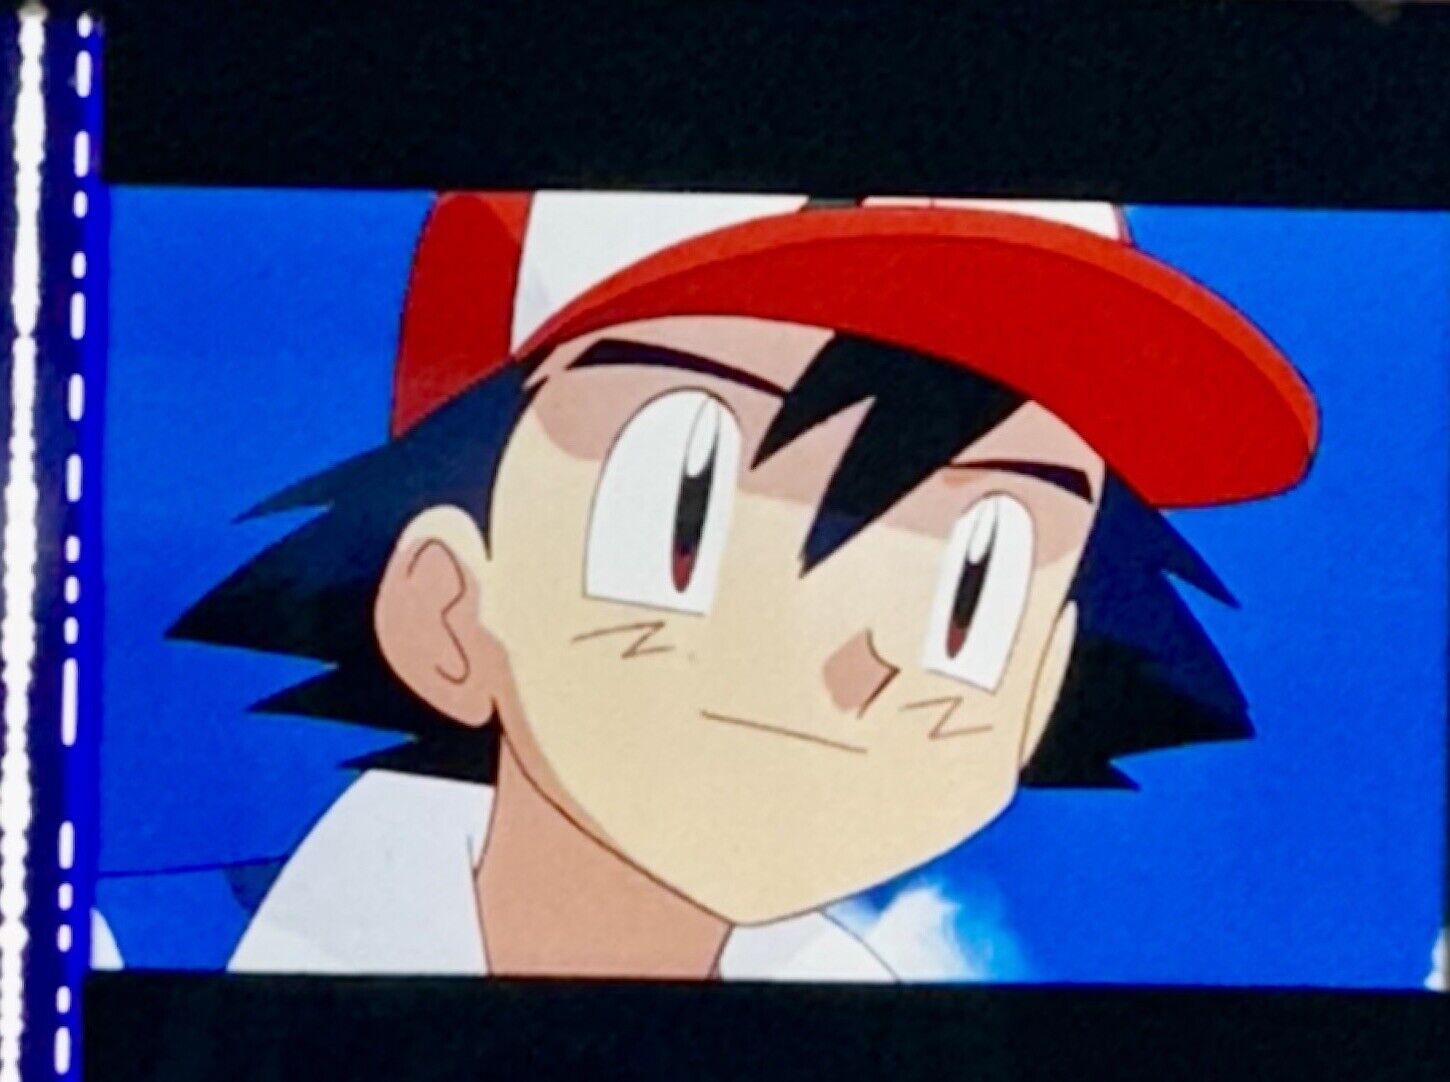 Pokémon The Movie 2000 Ash Ketchum 35mm Film Slide Frames Satoshi Rare